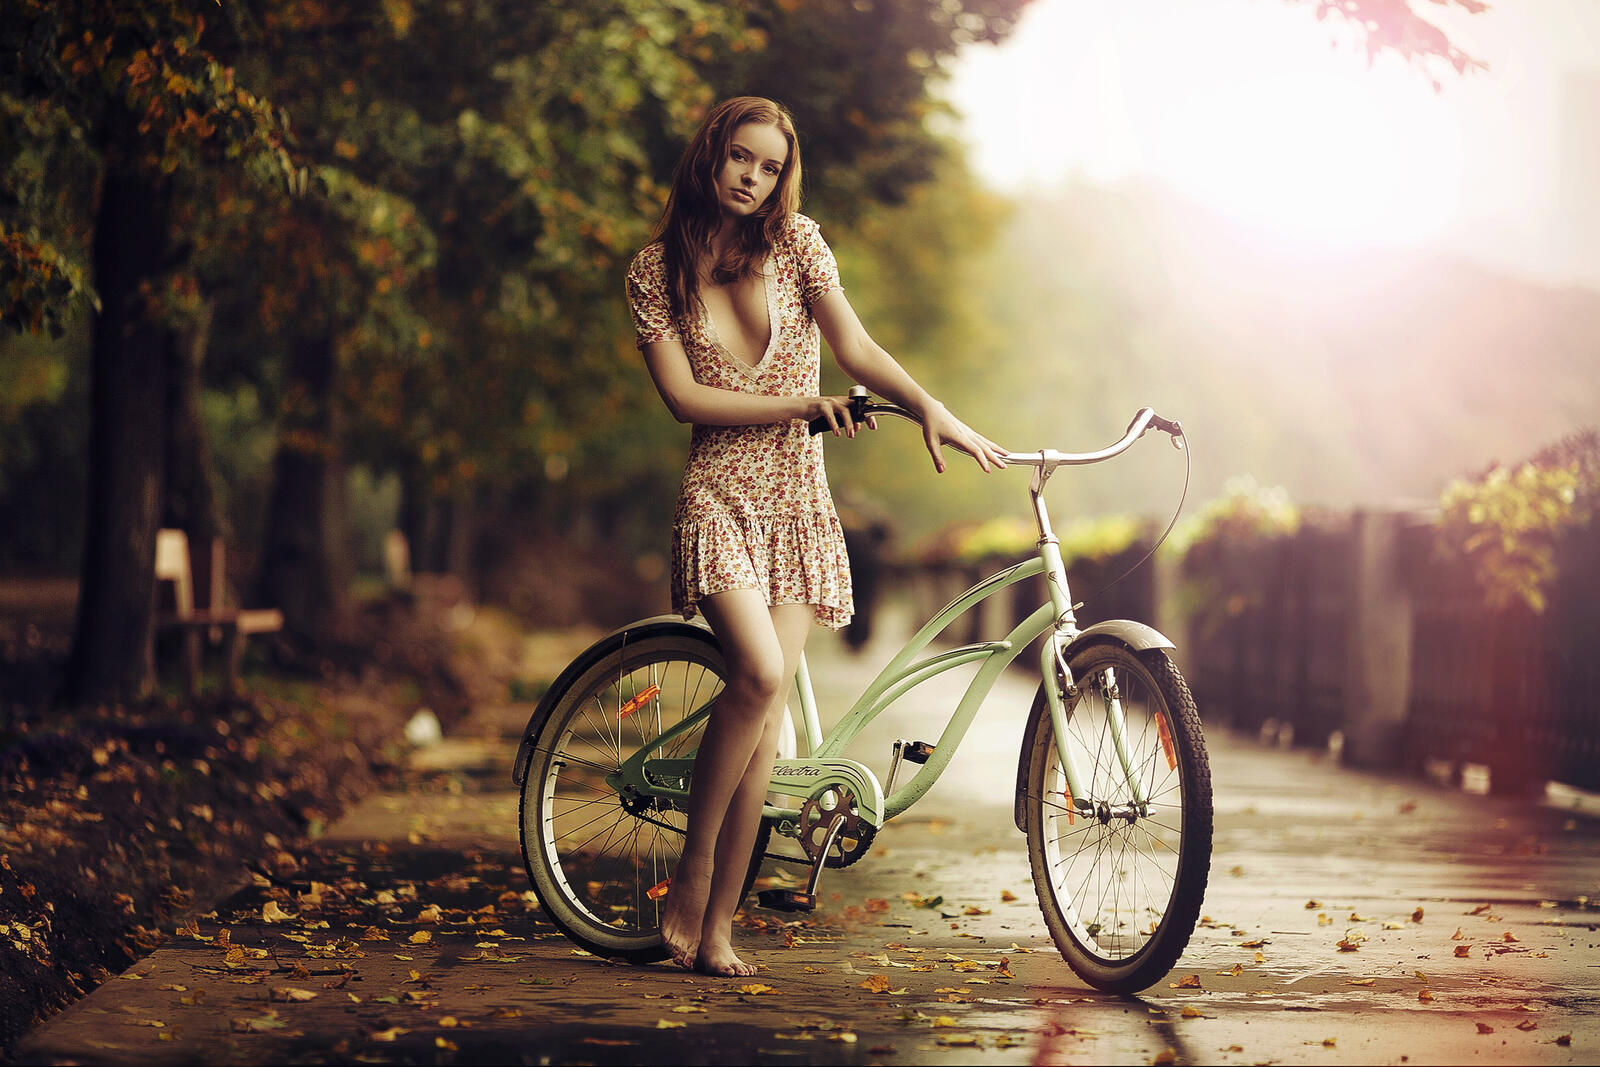 Бесплатное фото В платье под дождем девушка с велосипедом